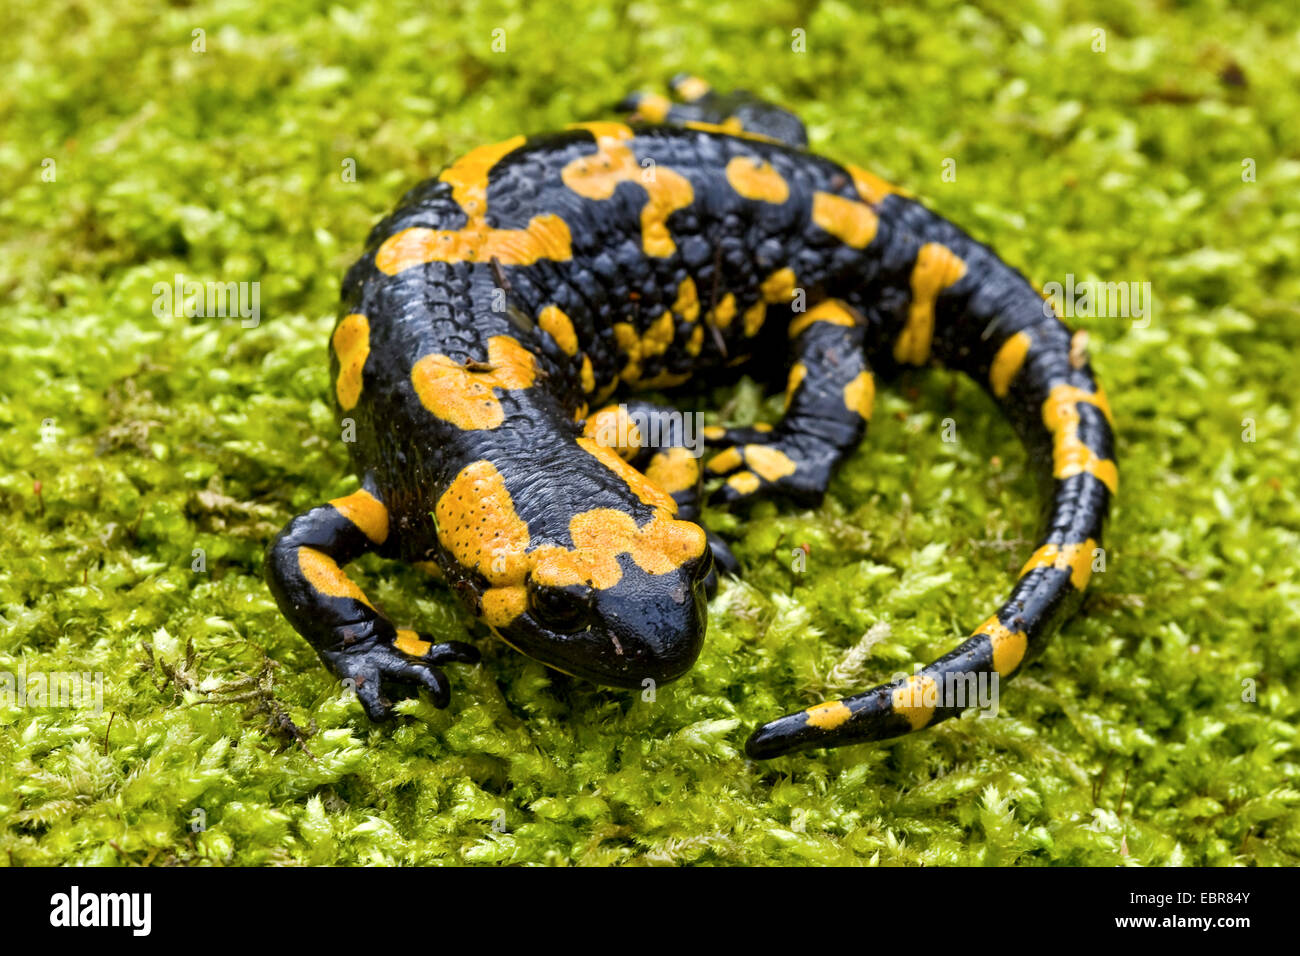 European fire salamander (Salamandra salamandra), lying in moss, Germany Stock Photo